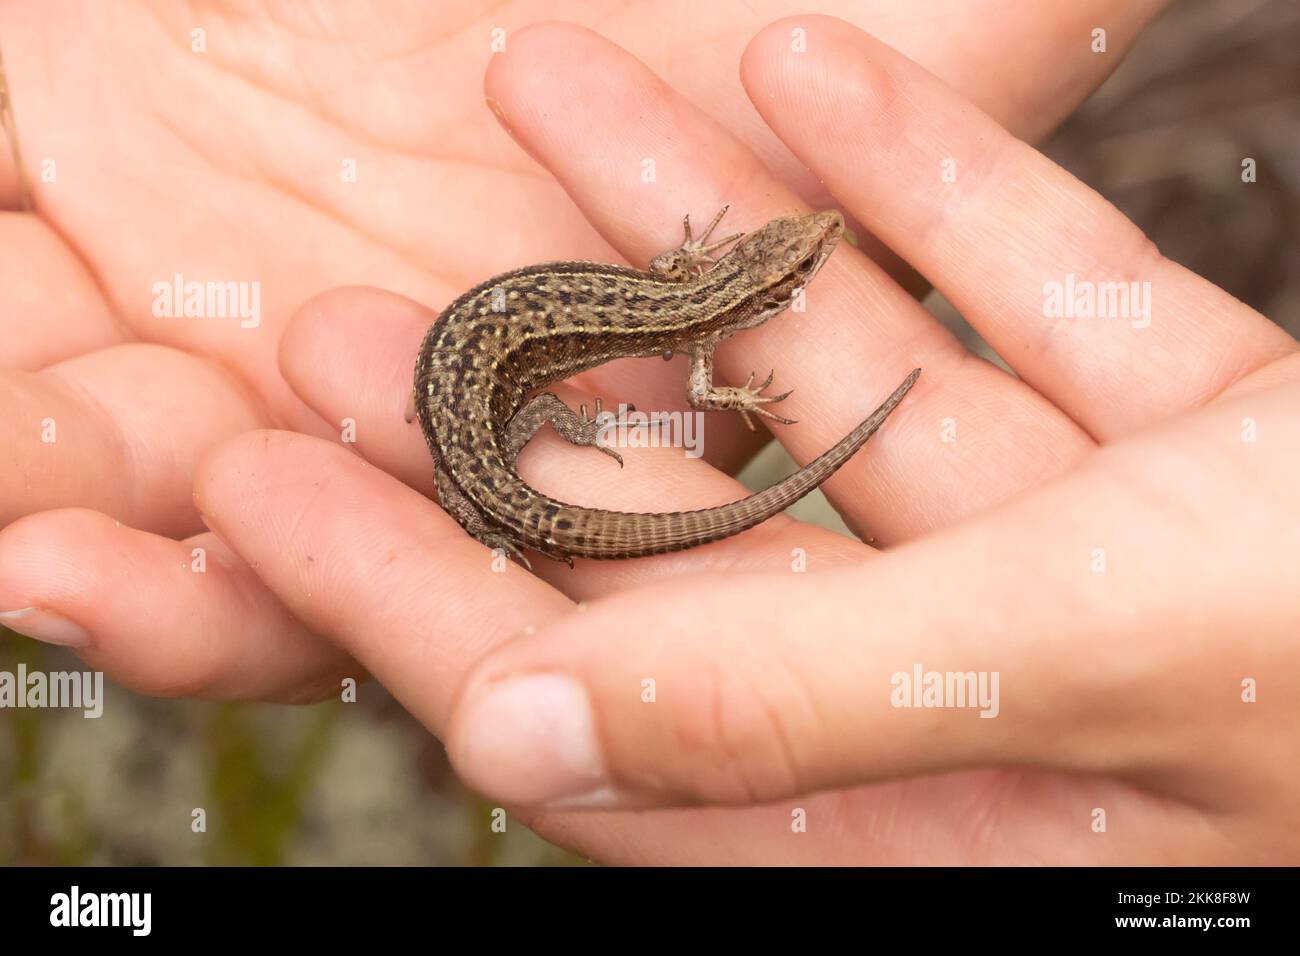 Lizard comune (lacerta vivipara) tenuto in mano. Surrey, Regno Unito. Foto Stock